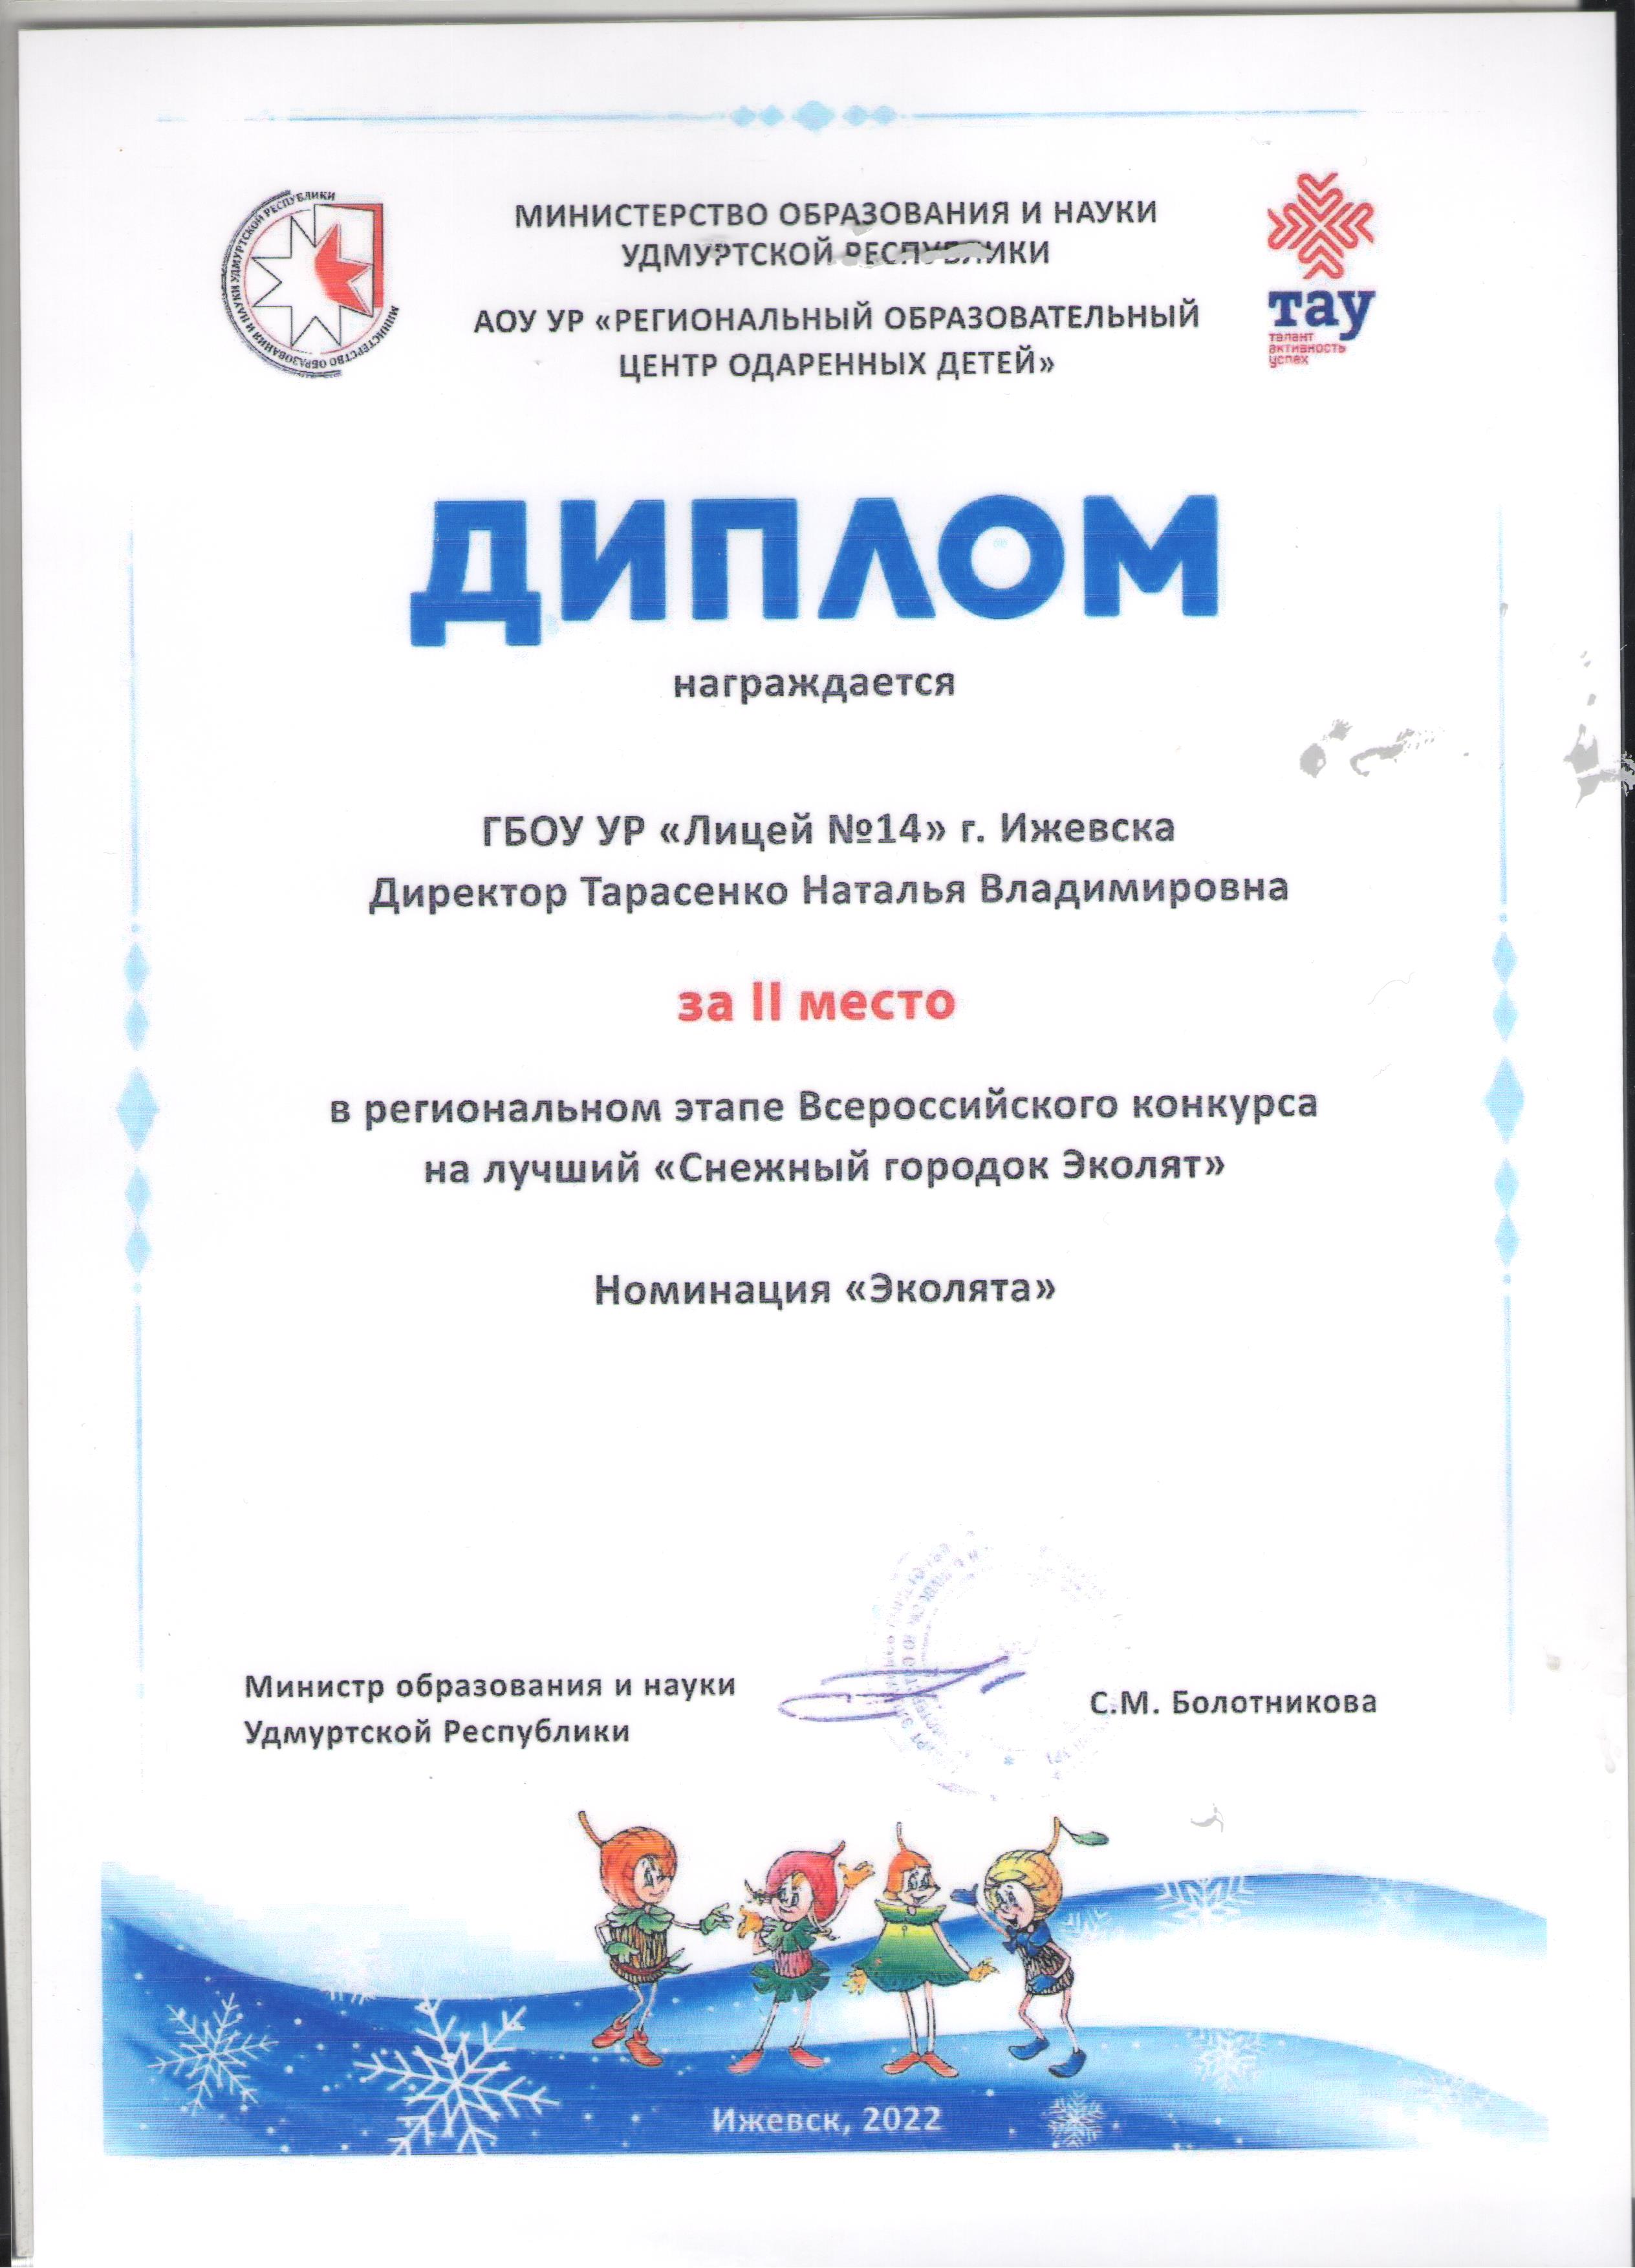 Всероссийского конкурса "Снежный городок" Эколята